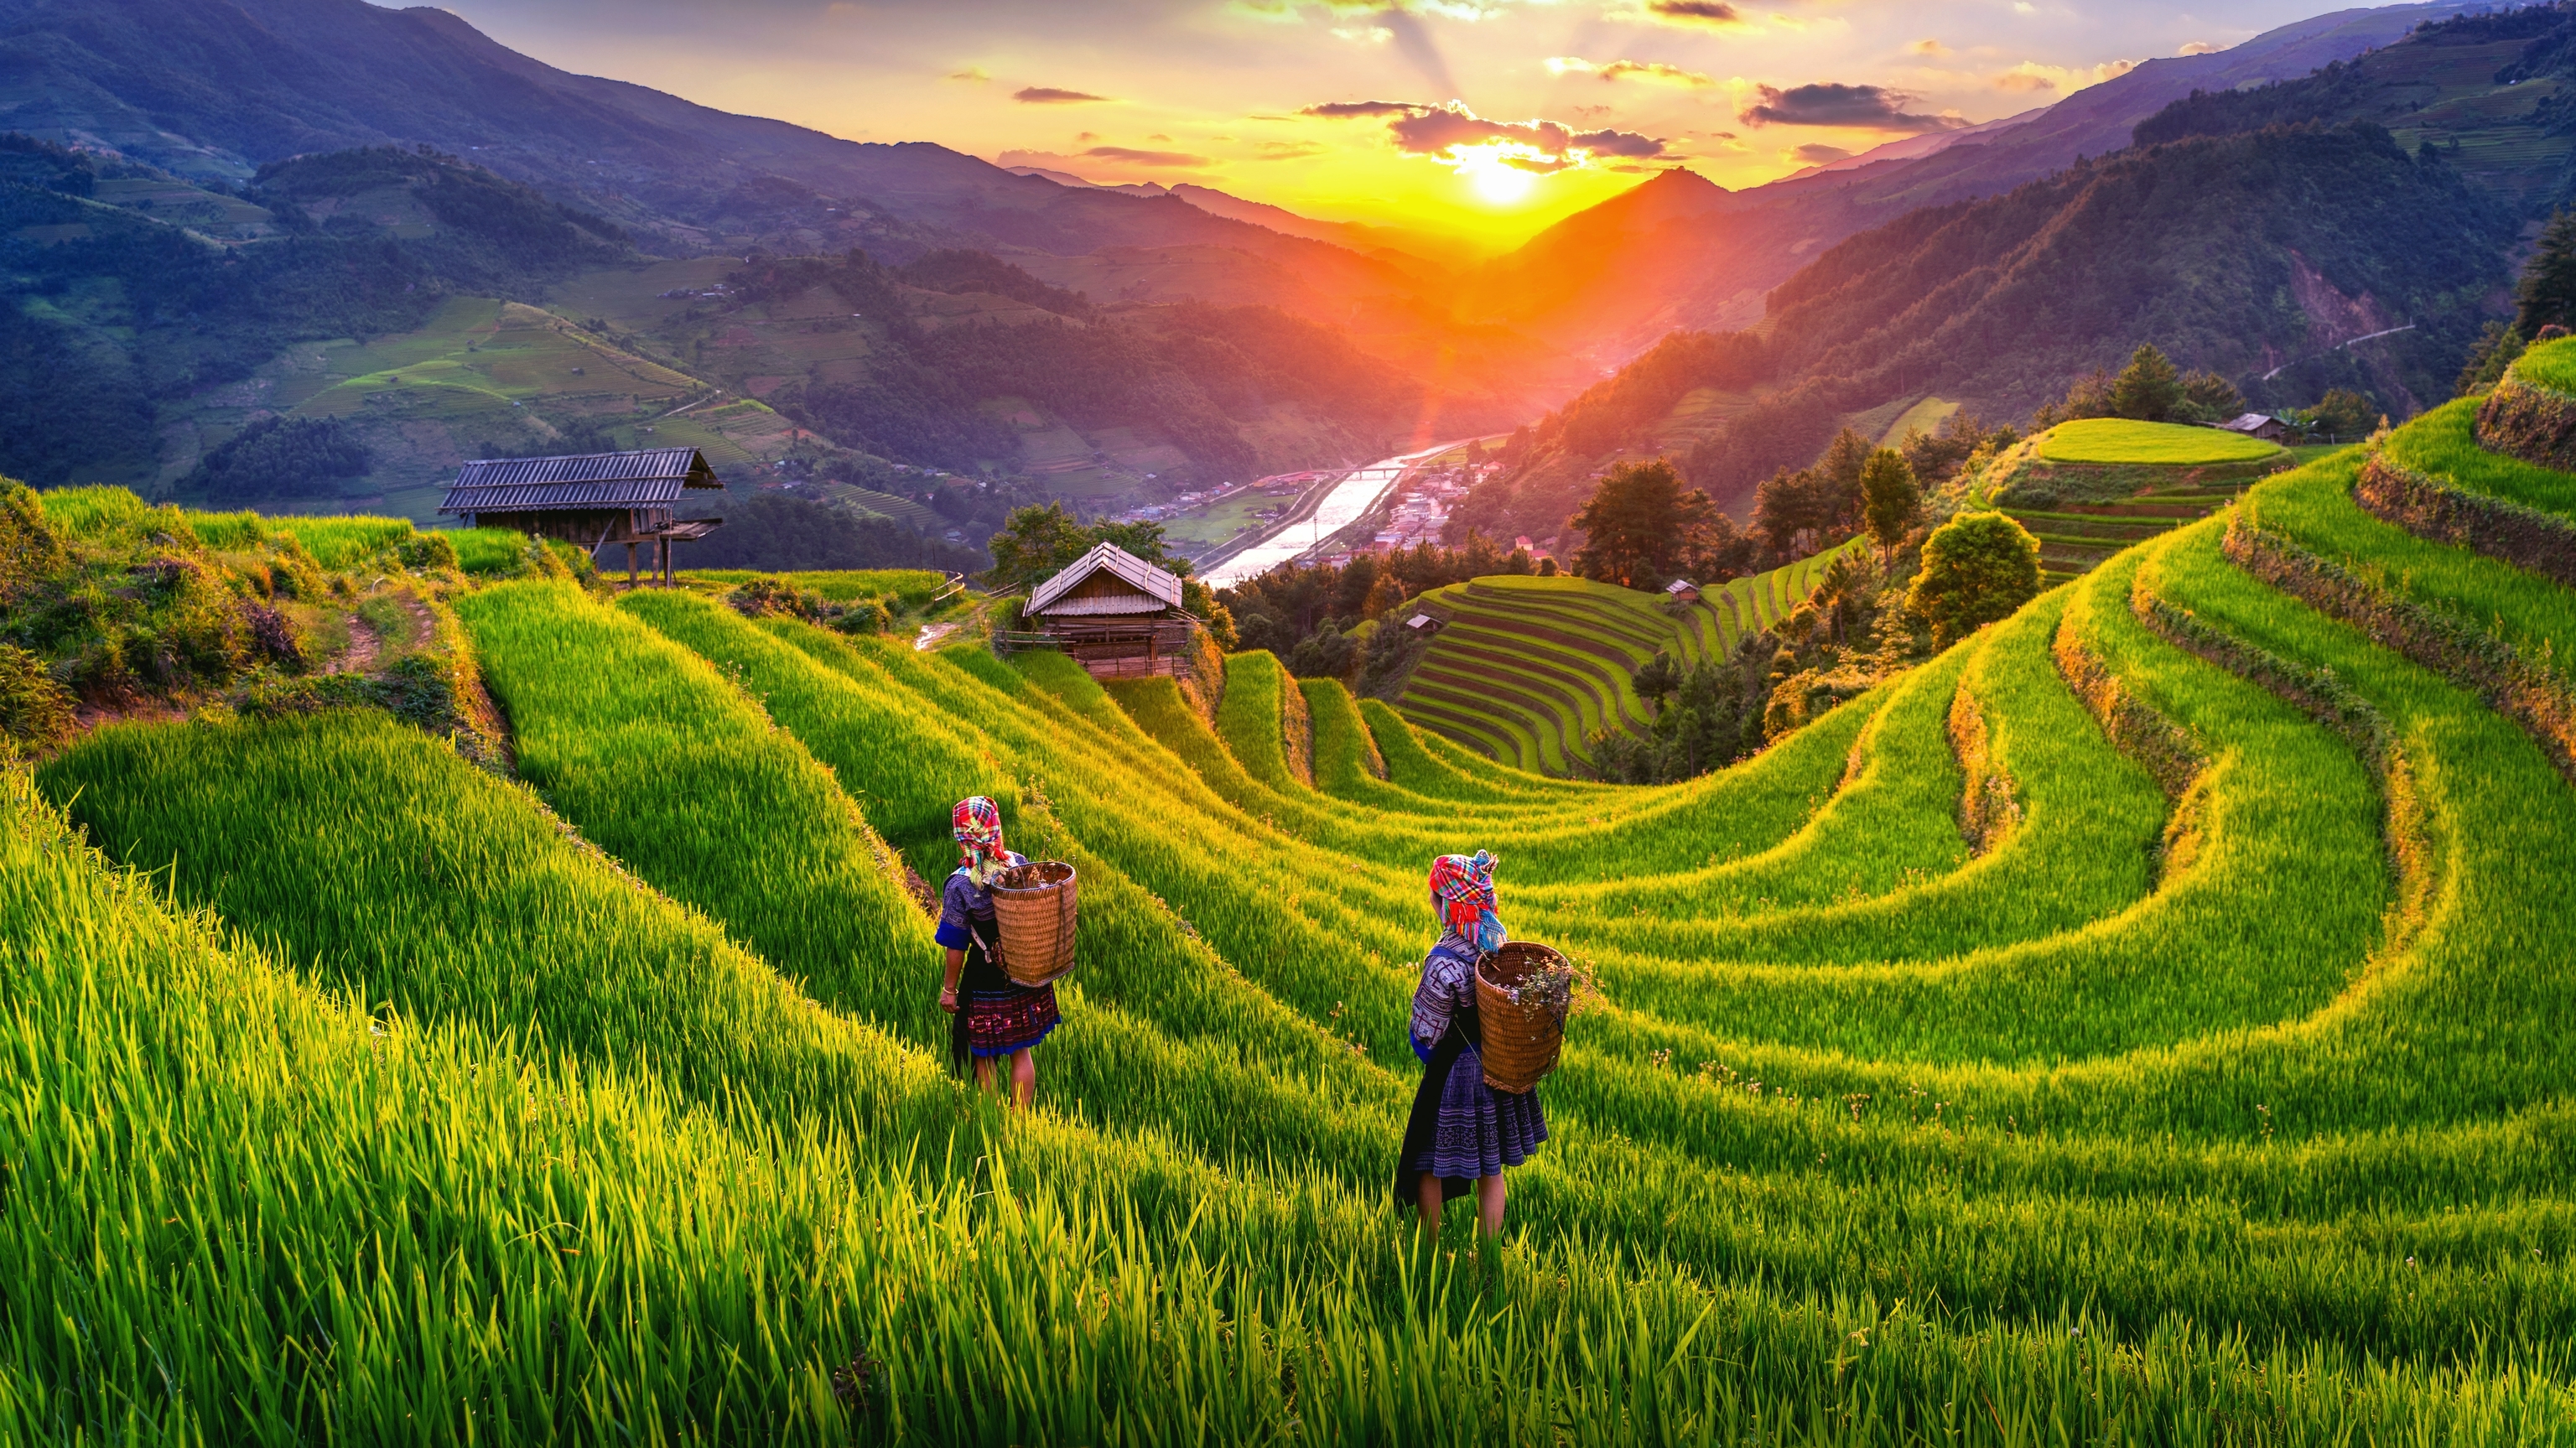 Los arrozales de Vietnam.